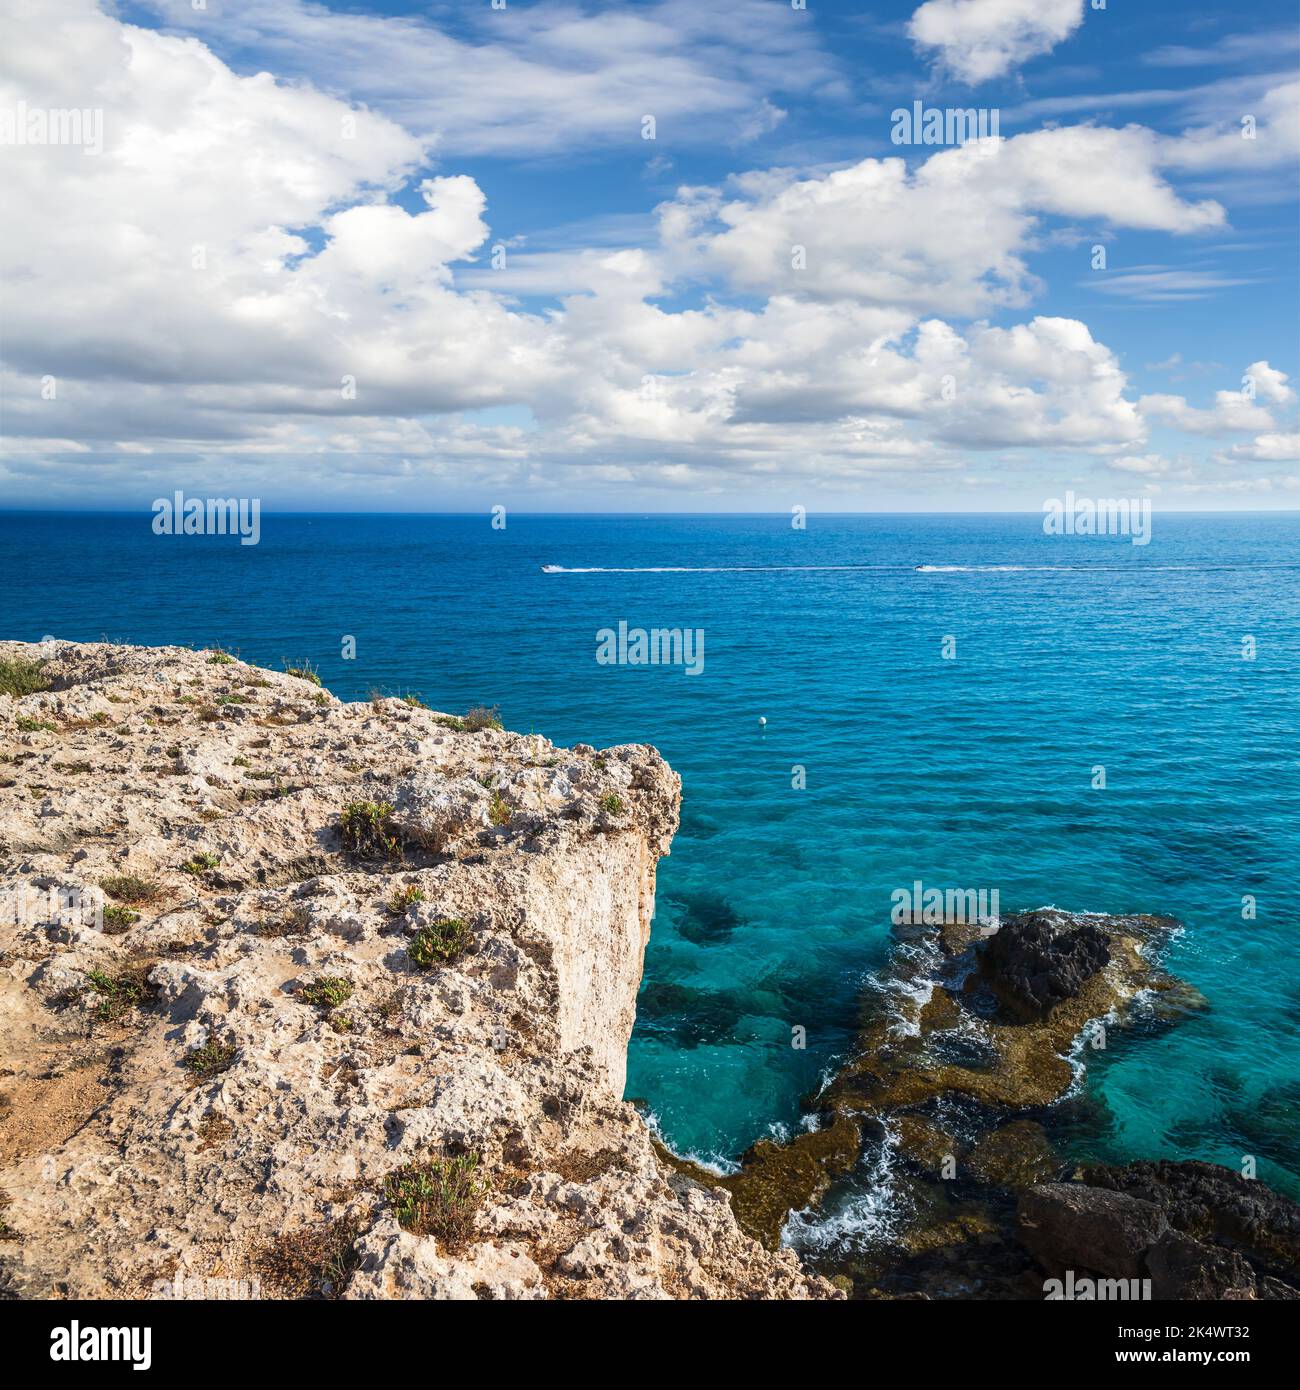 Vue sur la côte avec rochers et eau de mer sous ciel nuageux. Ayia Napa, île de Chypre. Photo de paysage carré Banque D'Images